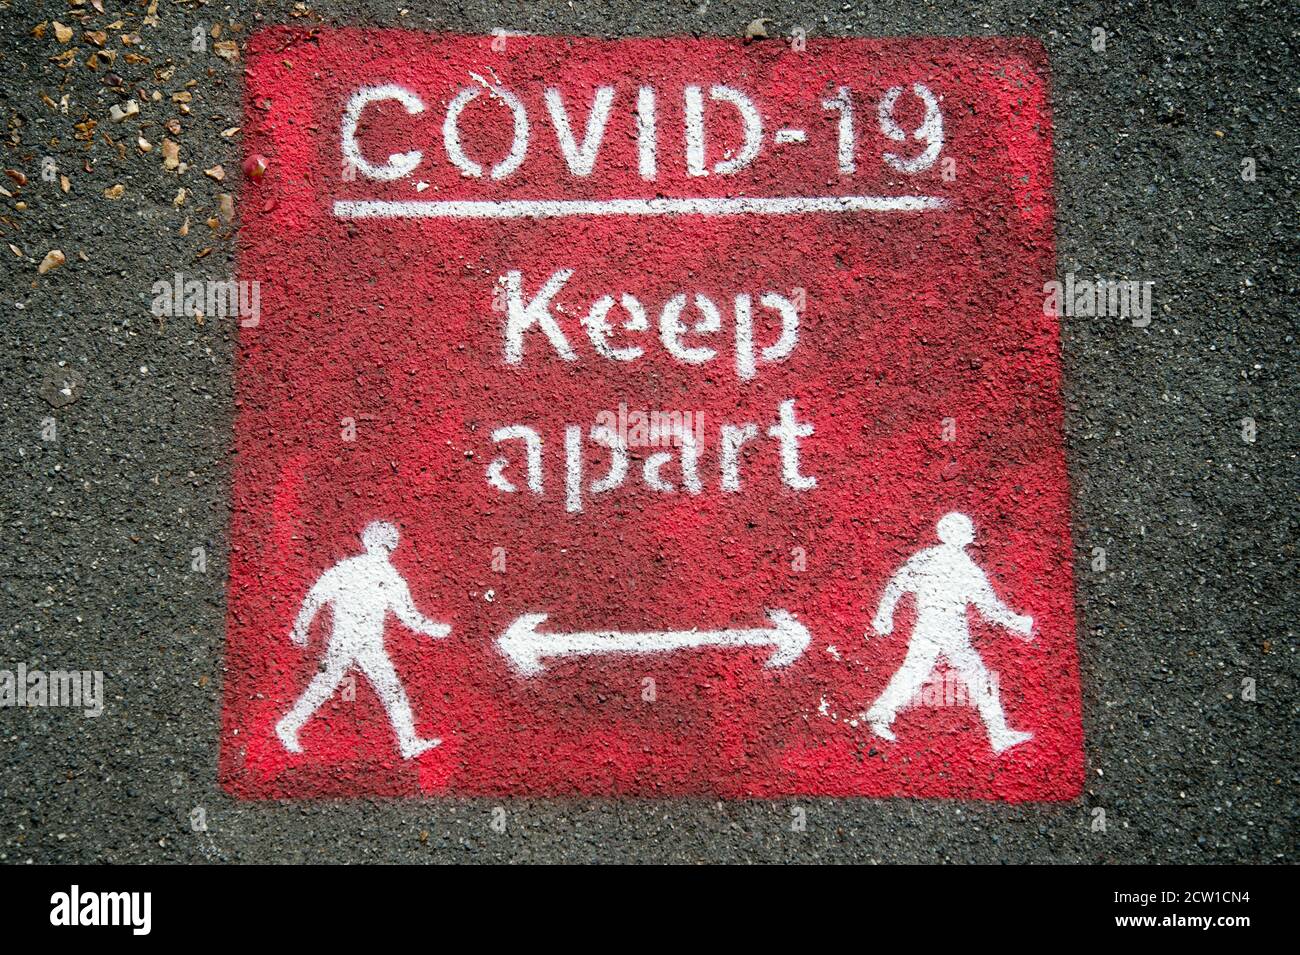 Isle of Wight, September 2020. Sandown. Auf dem Bürgersteig war ein Schild mit der Aufschrift „Covid 19 Keep apart“ gestrichen. Stockfoto